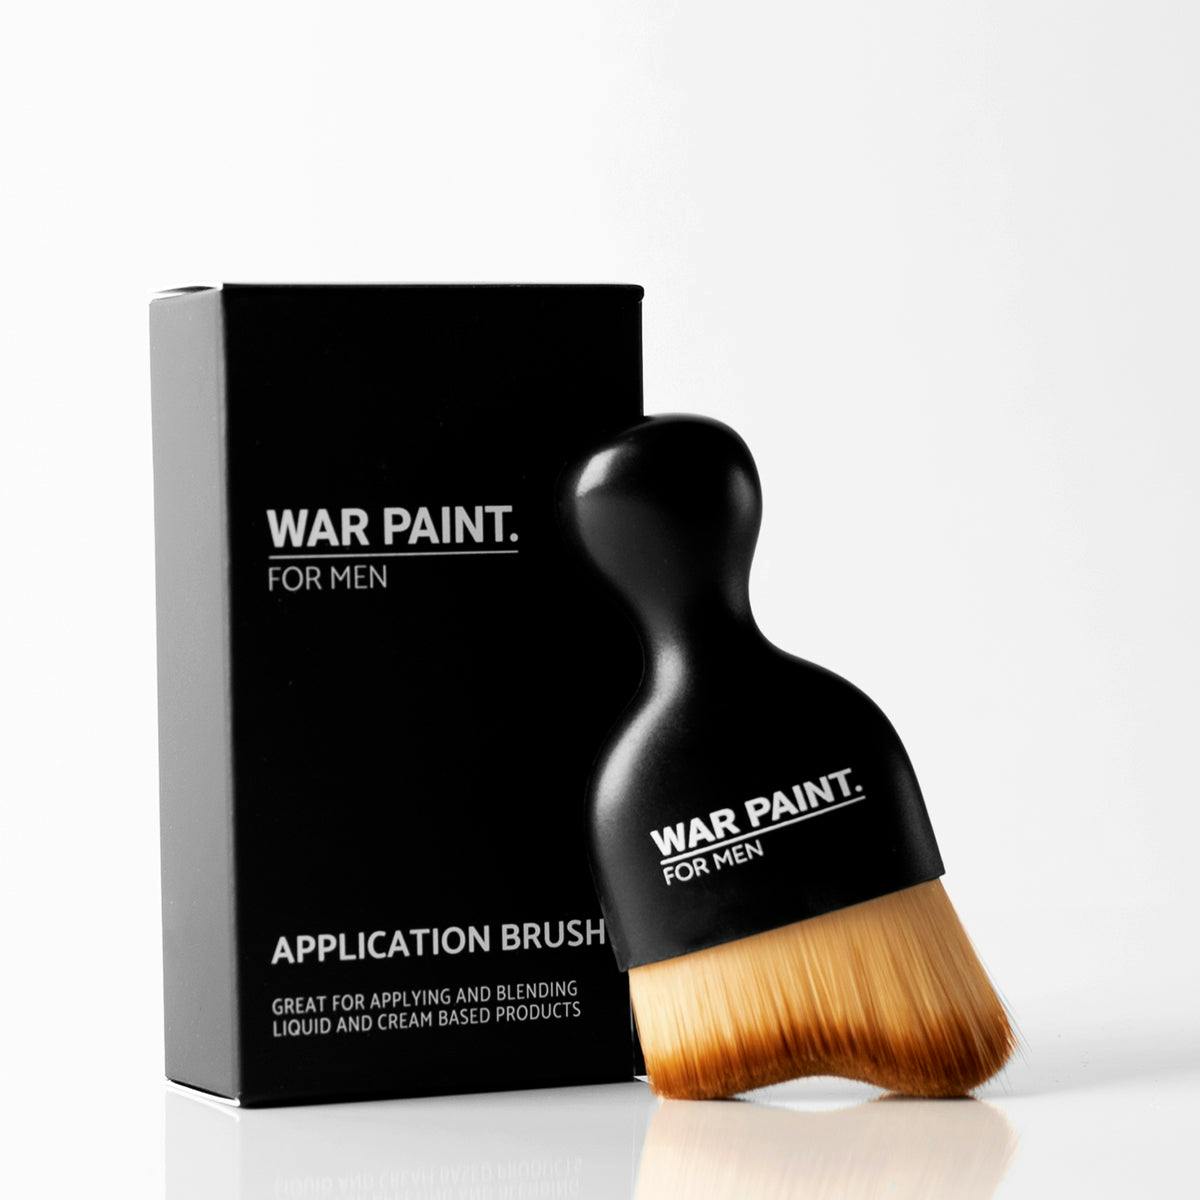 War Paint for Men Application Brush